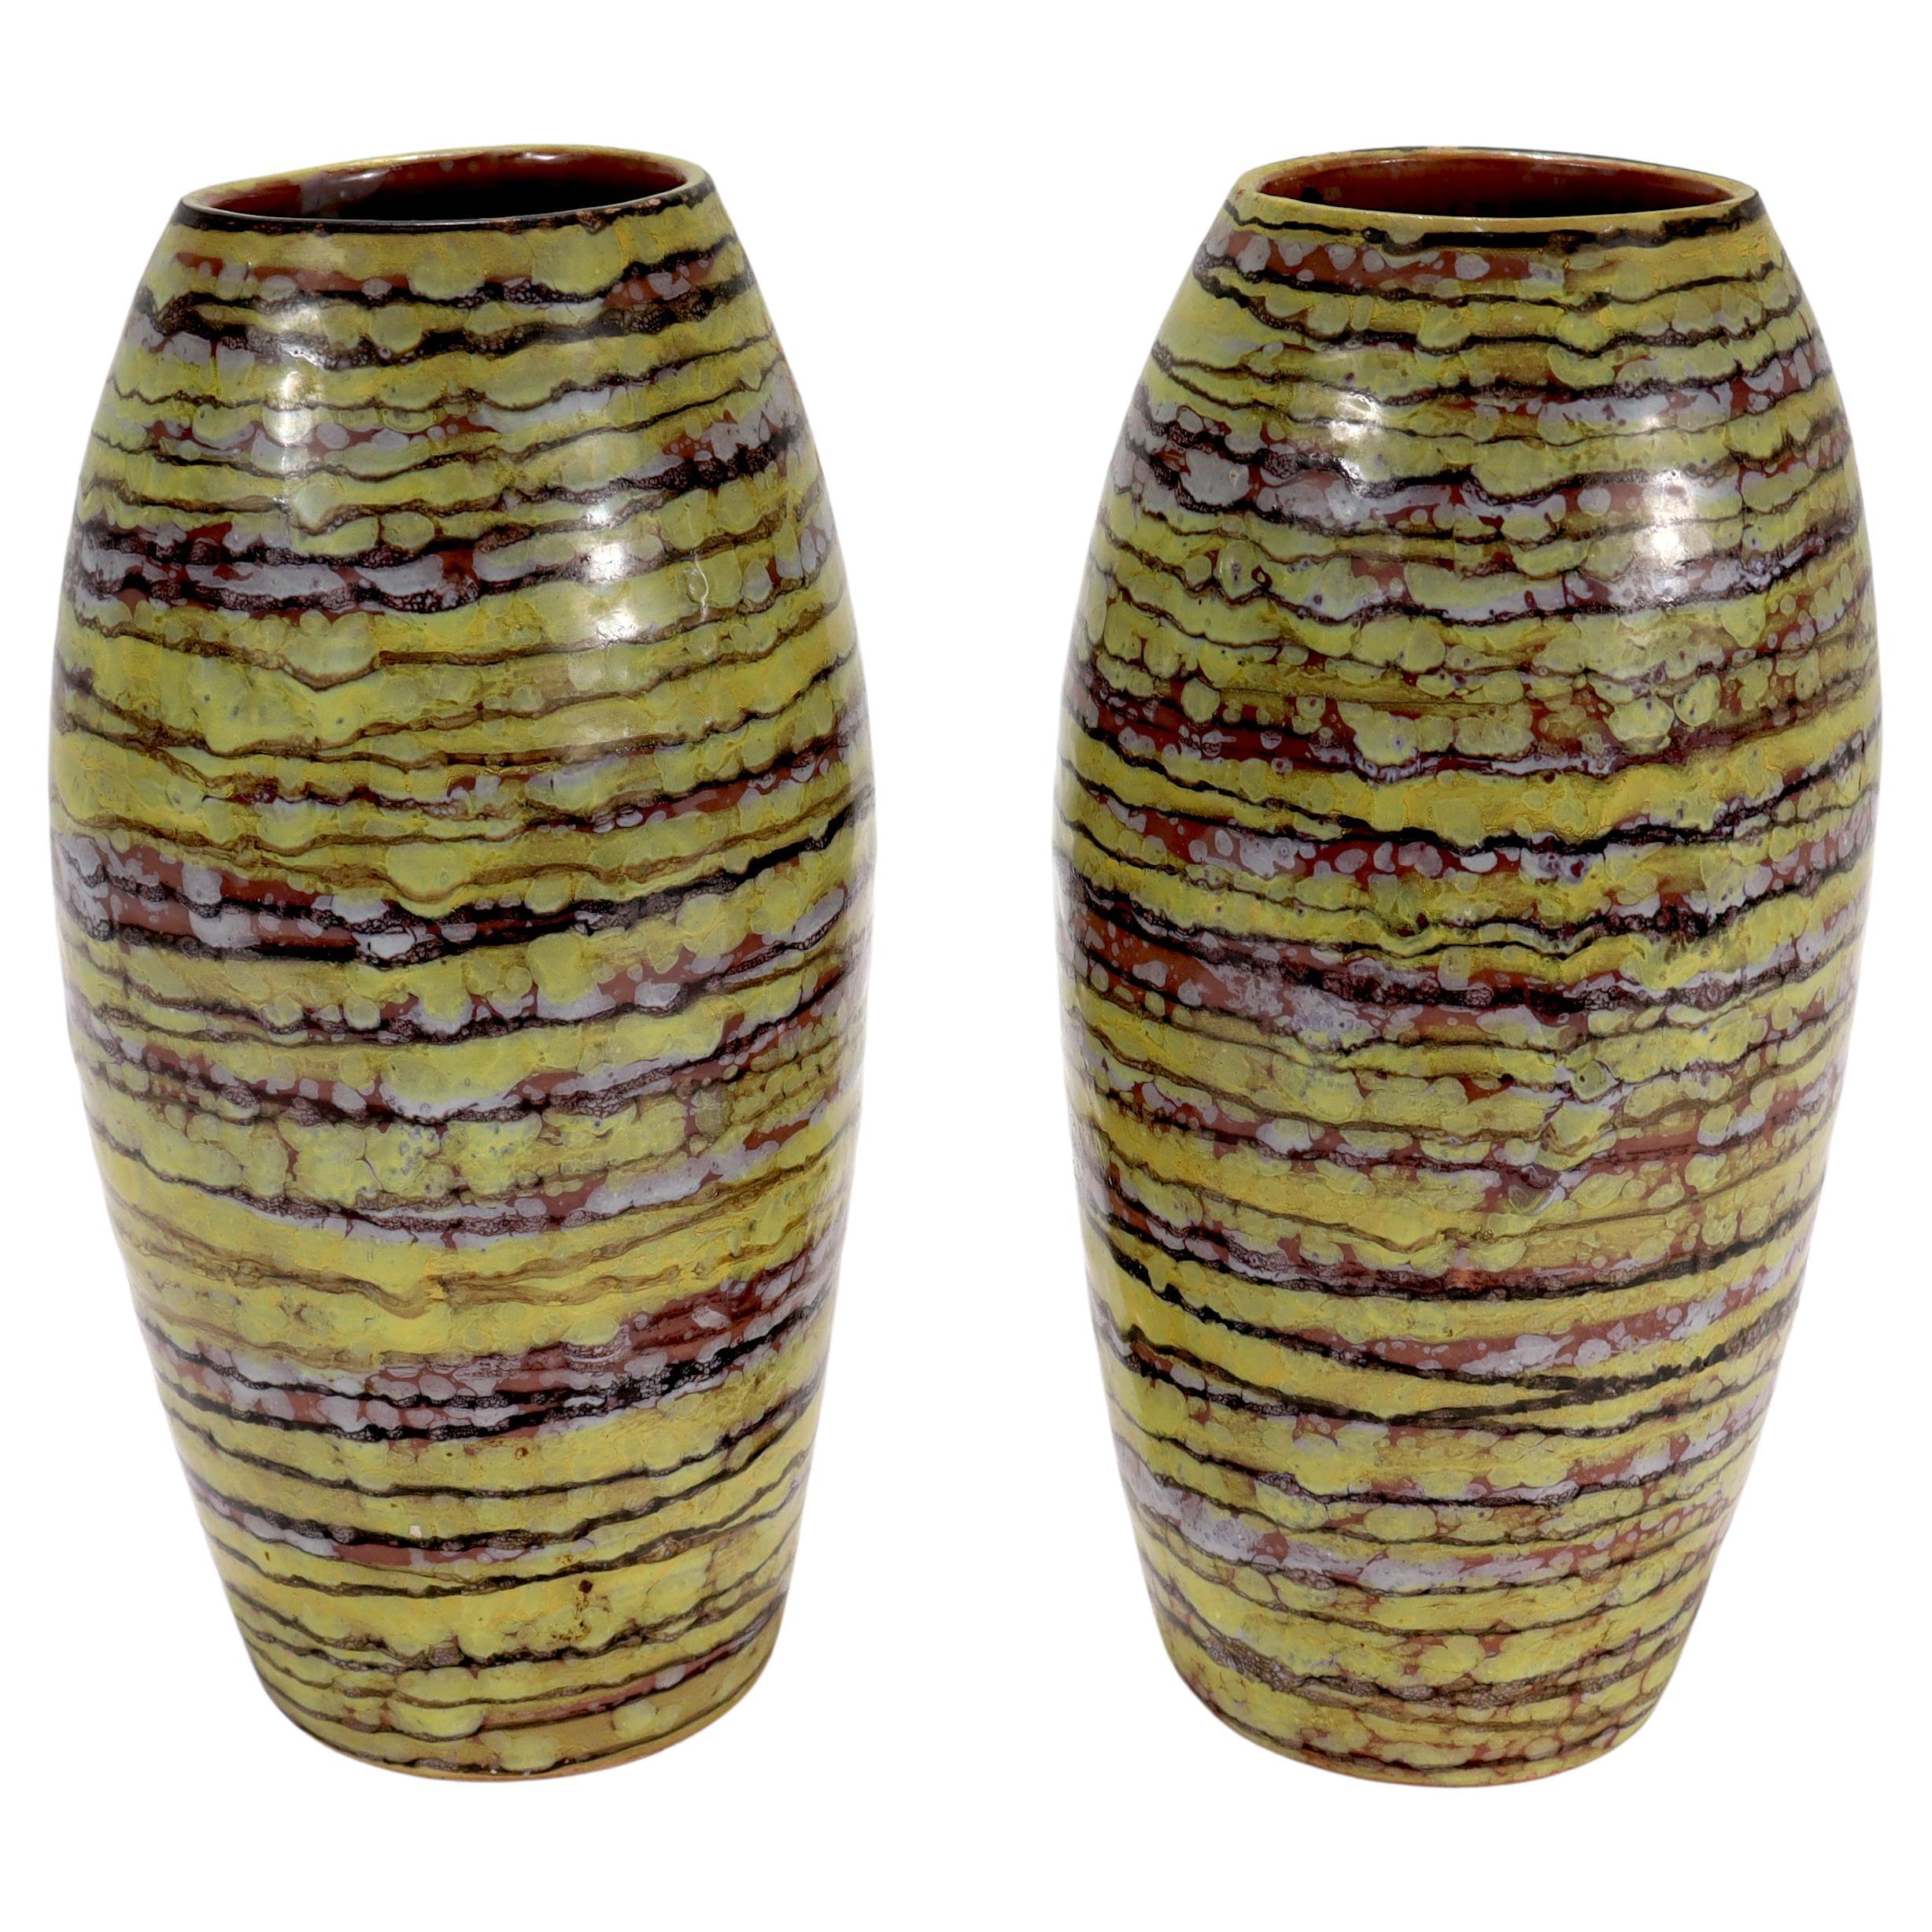 Une belle paire de vases italiens en terre cuite, de style moderne du milieu du siècle.

Les deux vases ont une glaçure principalement jaune, avec des bandes de rouge brunâtre et des taches de blanc.

Dans le style de Guido Gambone ou Marcello